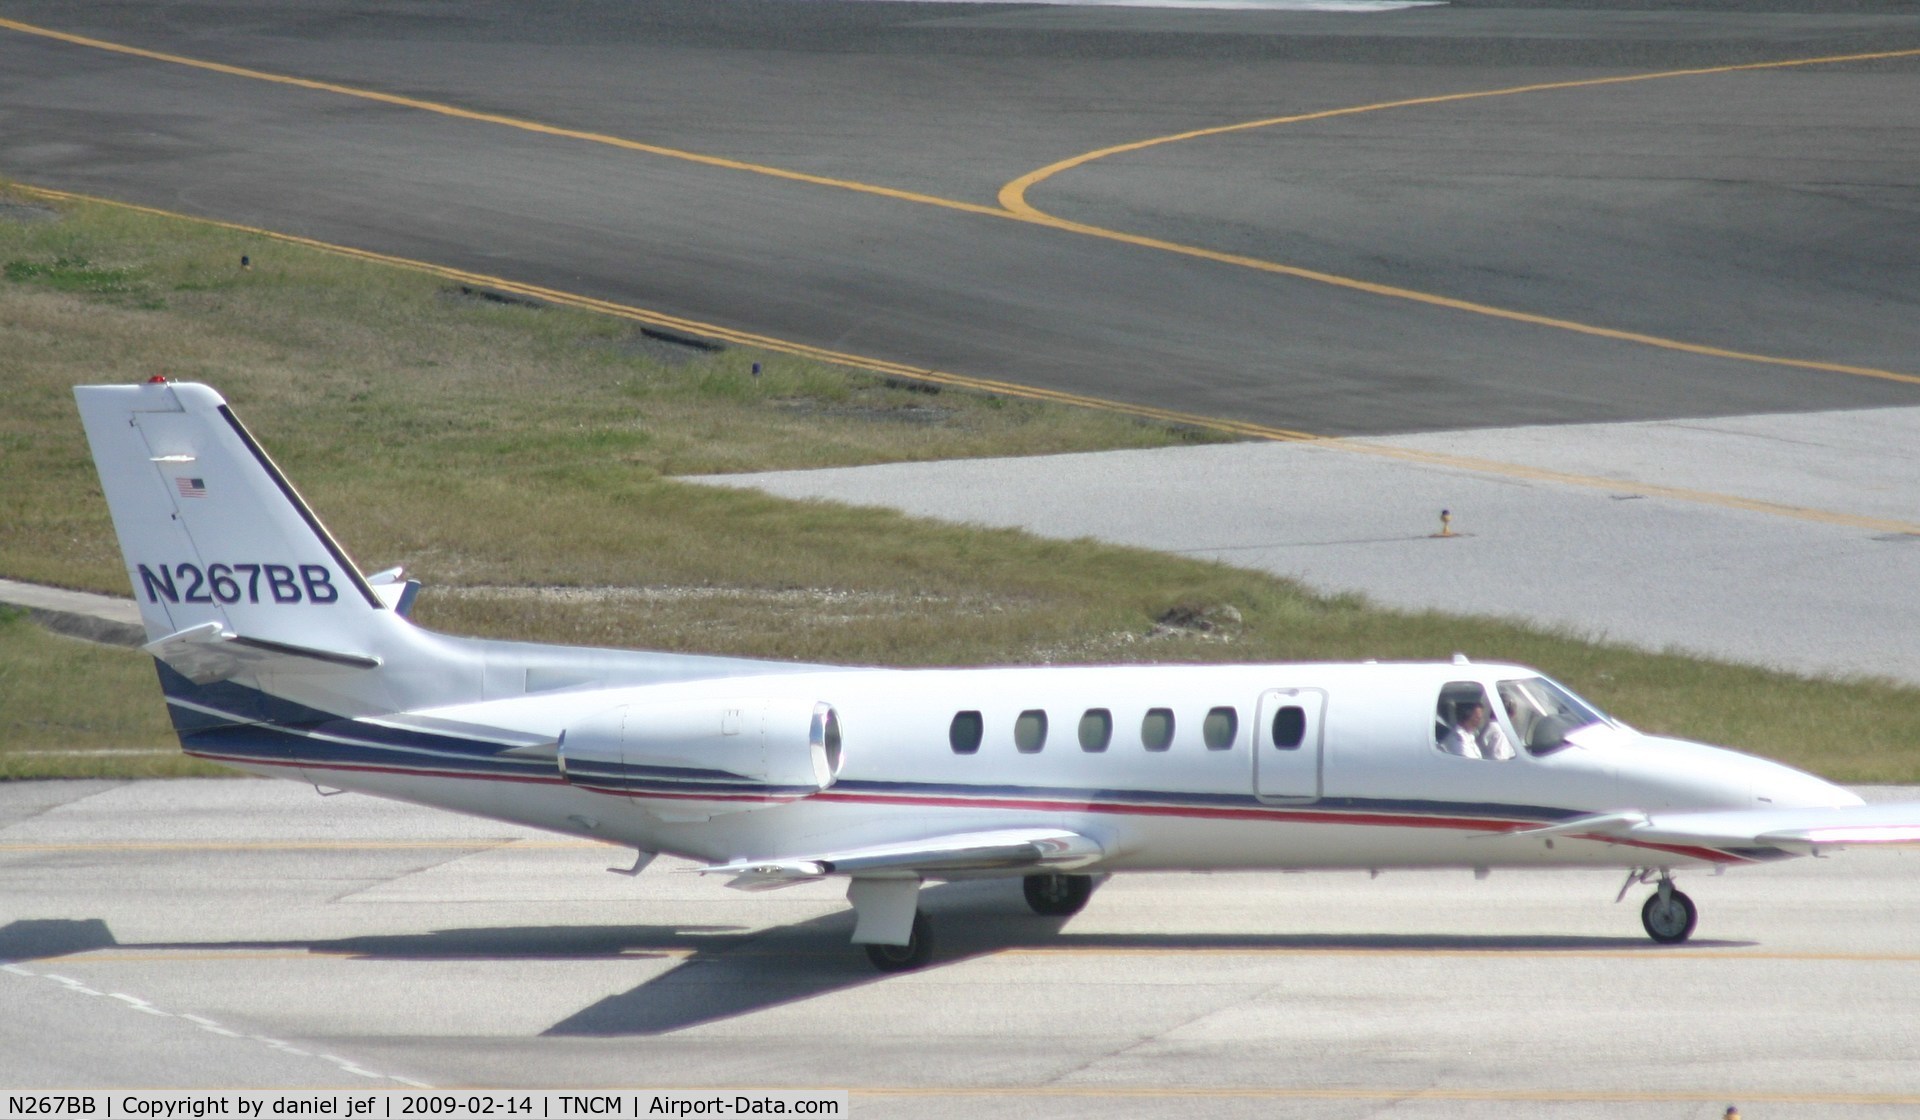 N267BB, 1979 Cessna 550 C/N 550-0067, taxing runway 10